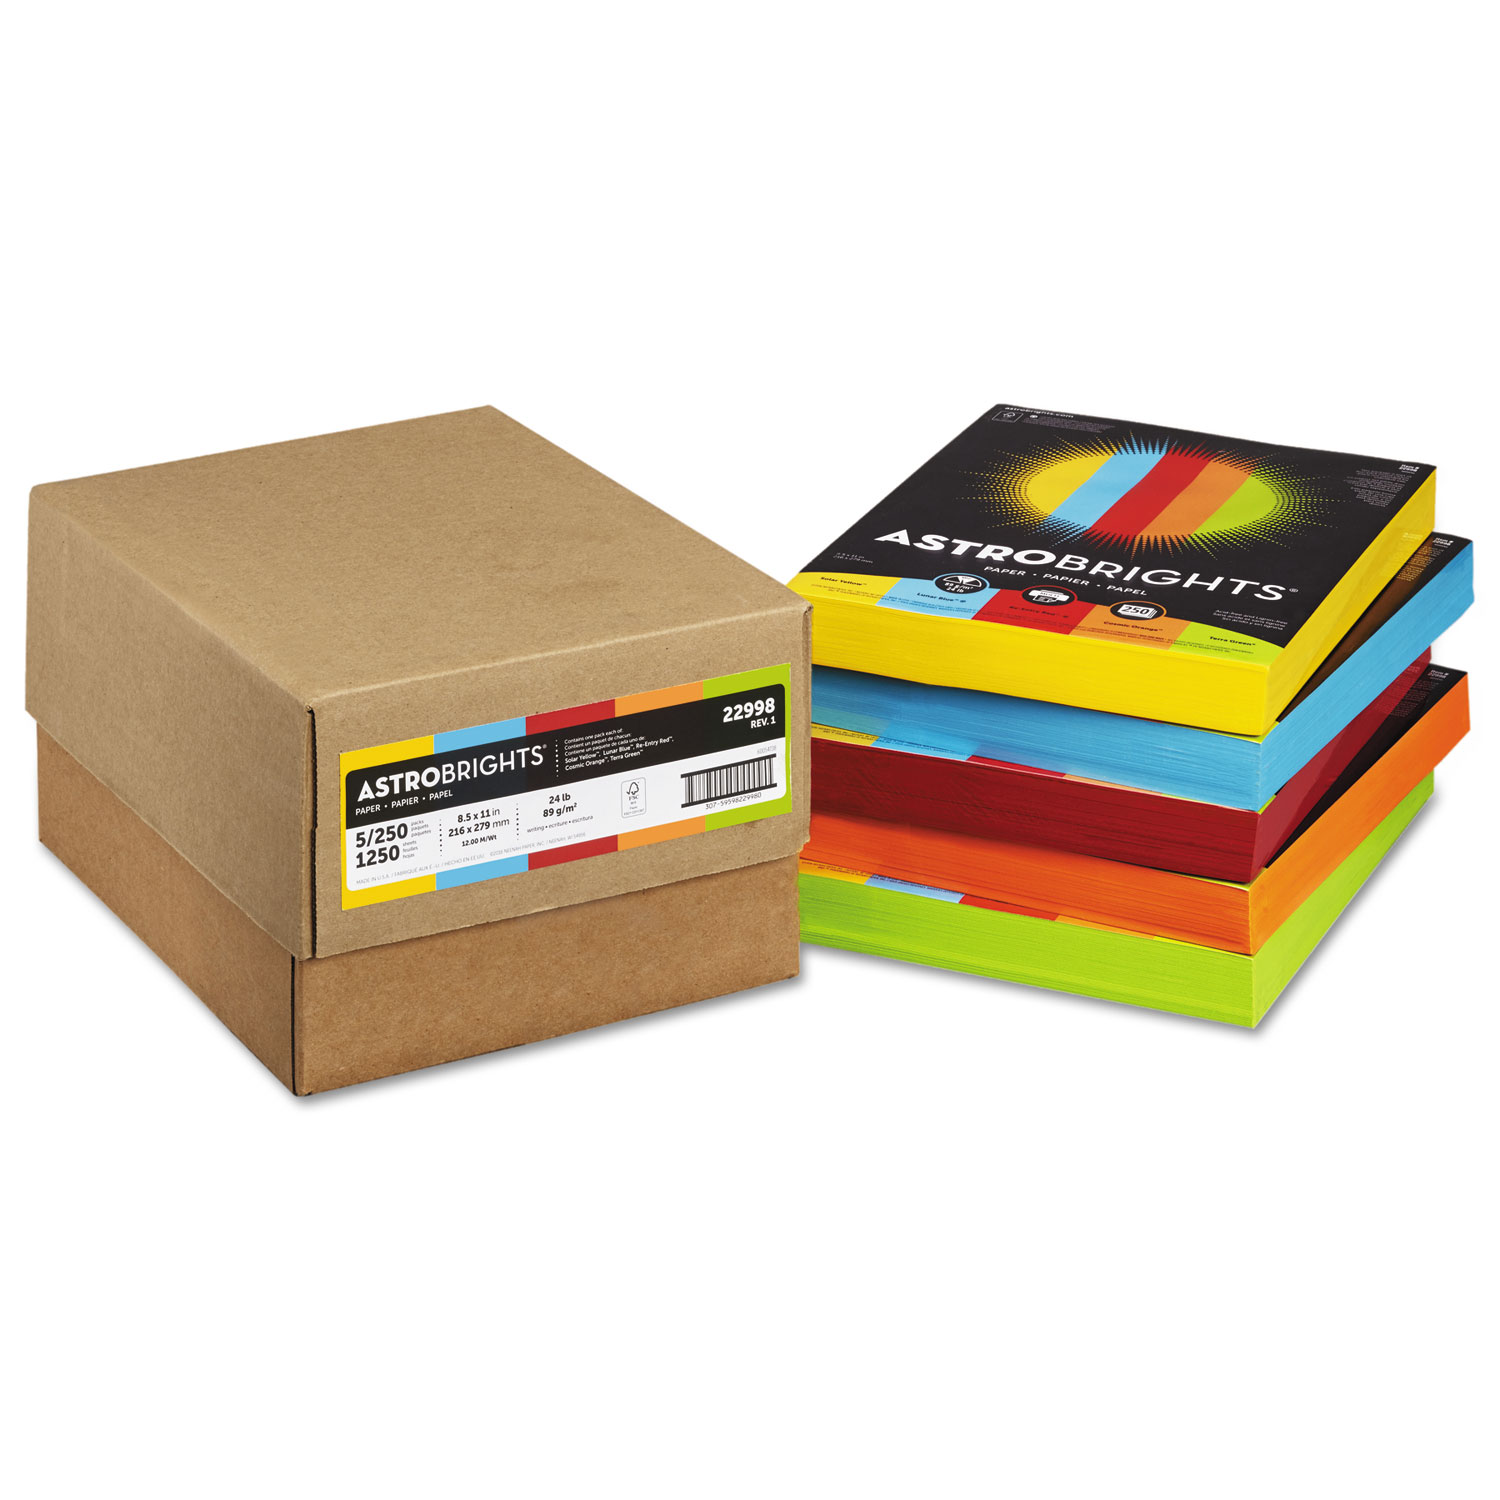 Color Paper - Five-Color Mixed Carton, 24 lb Bond Weight, 8.5 x 11,  Assorted, 250 Sheets/Ream, 5 Reams/Carton - TonerQuest